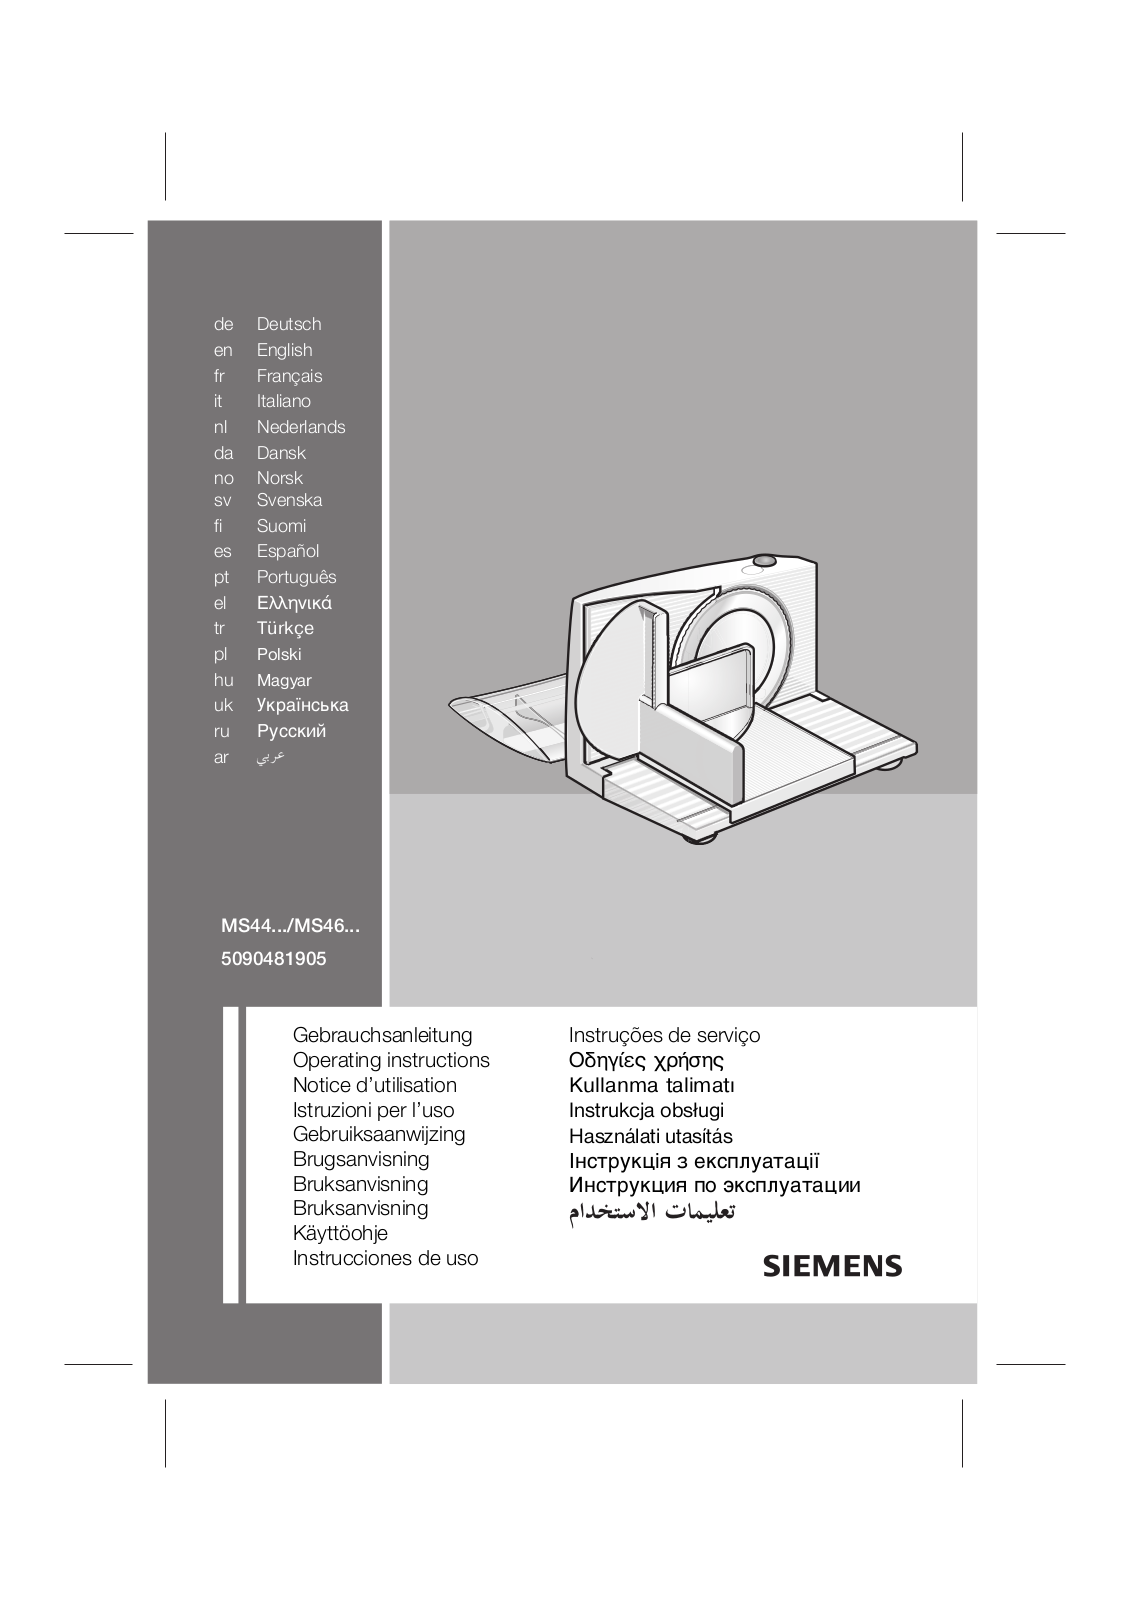 Siemens MS44000 Manual